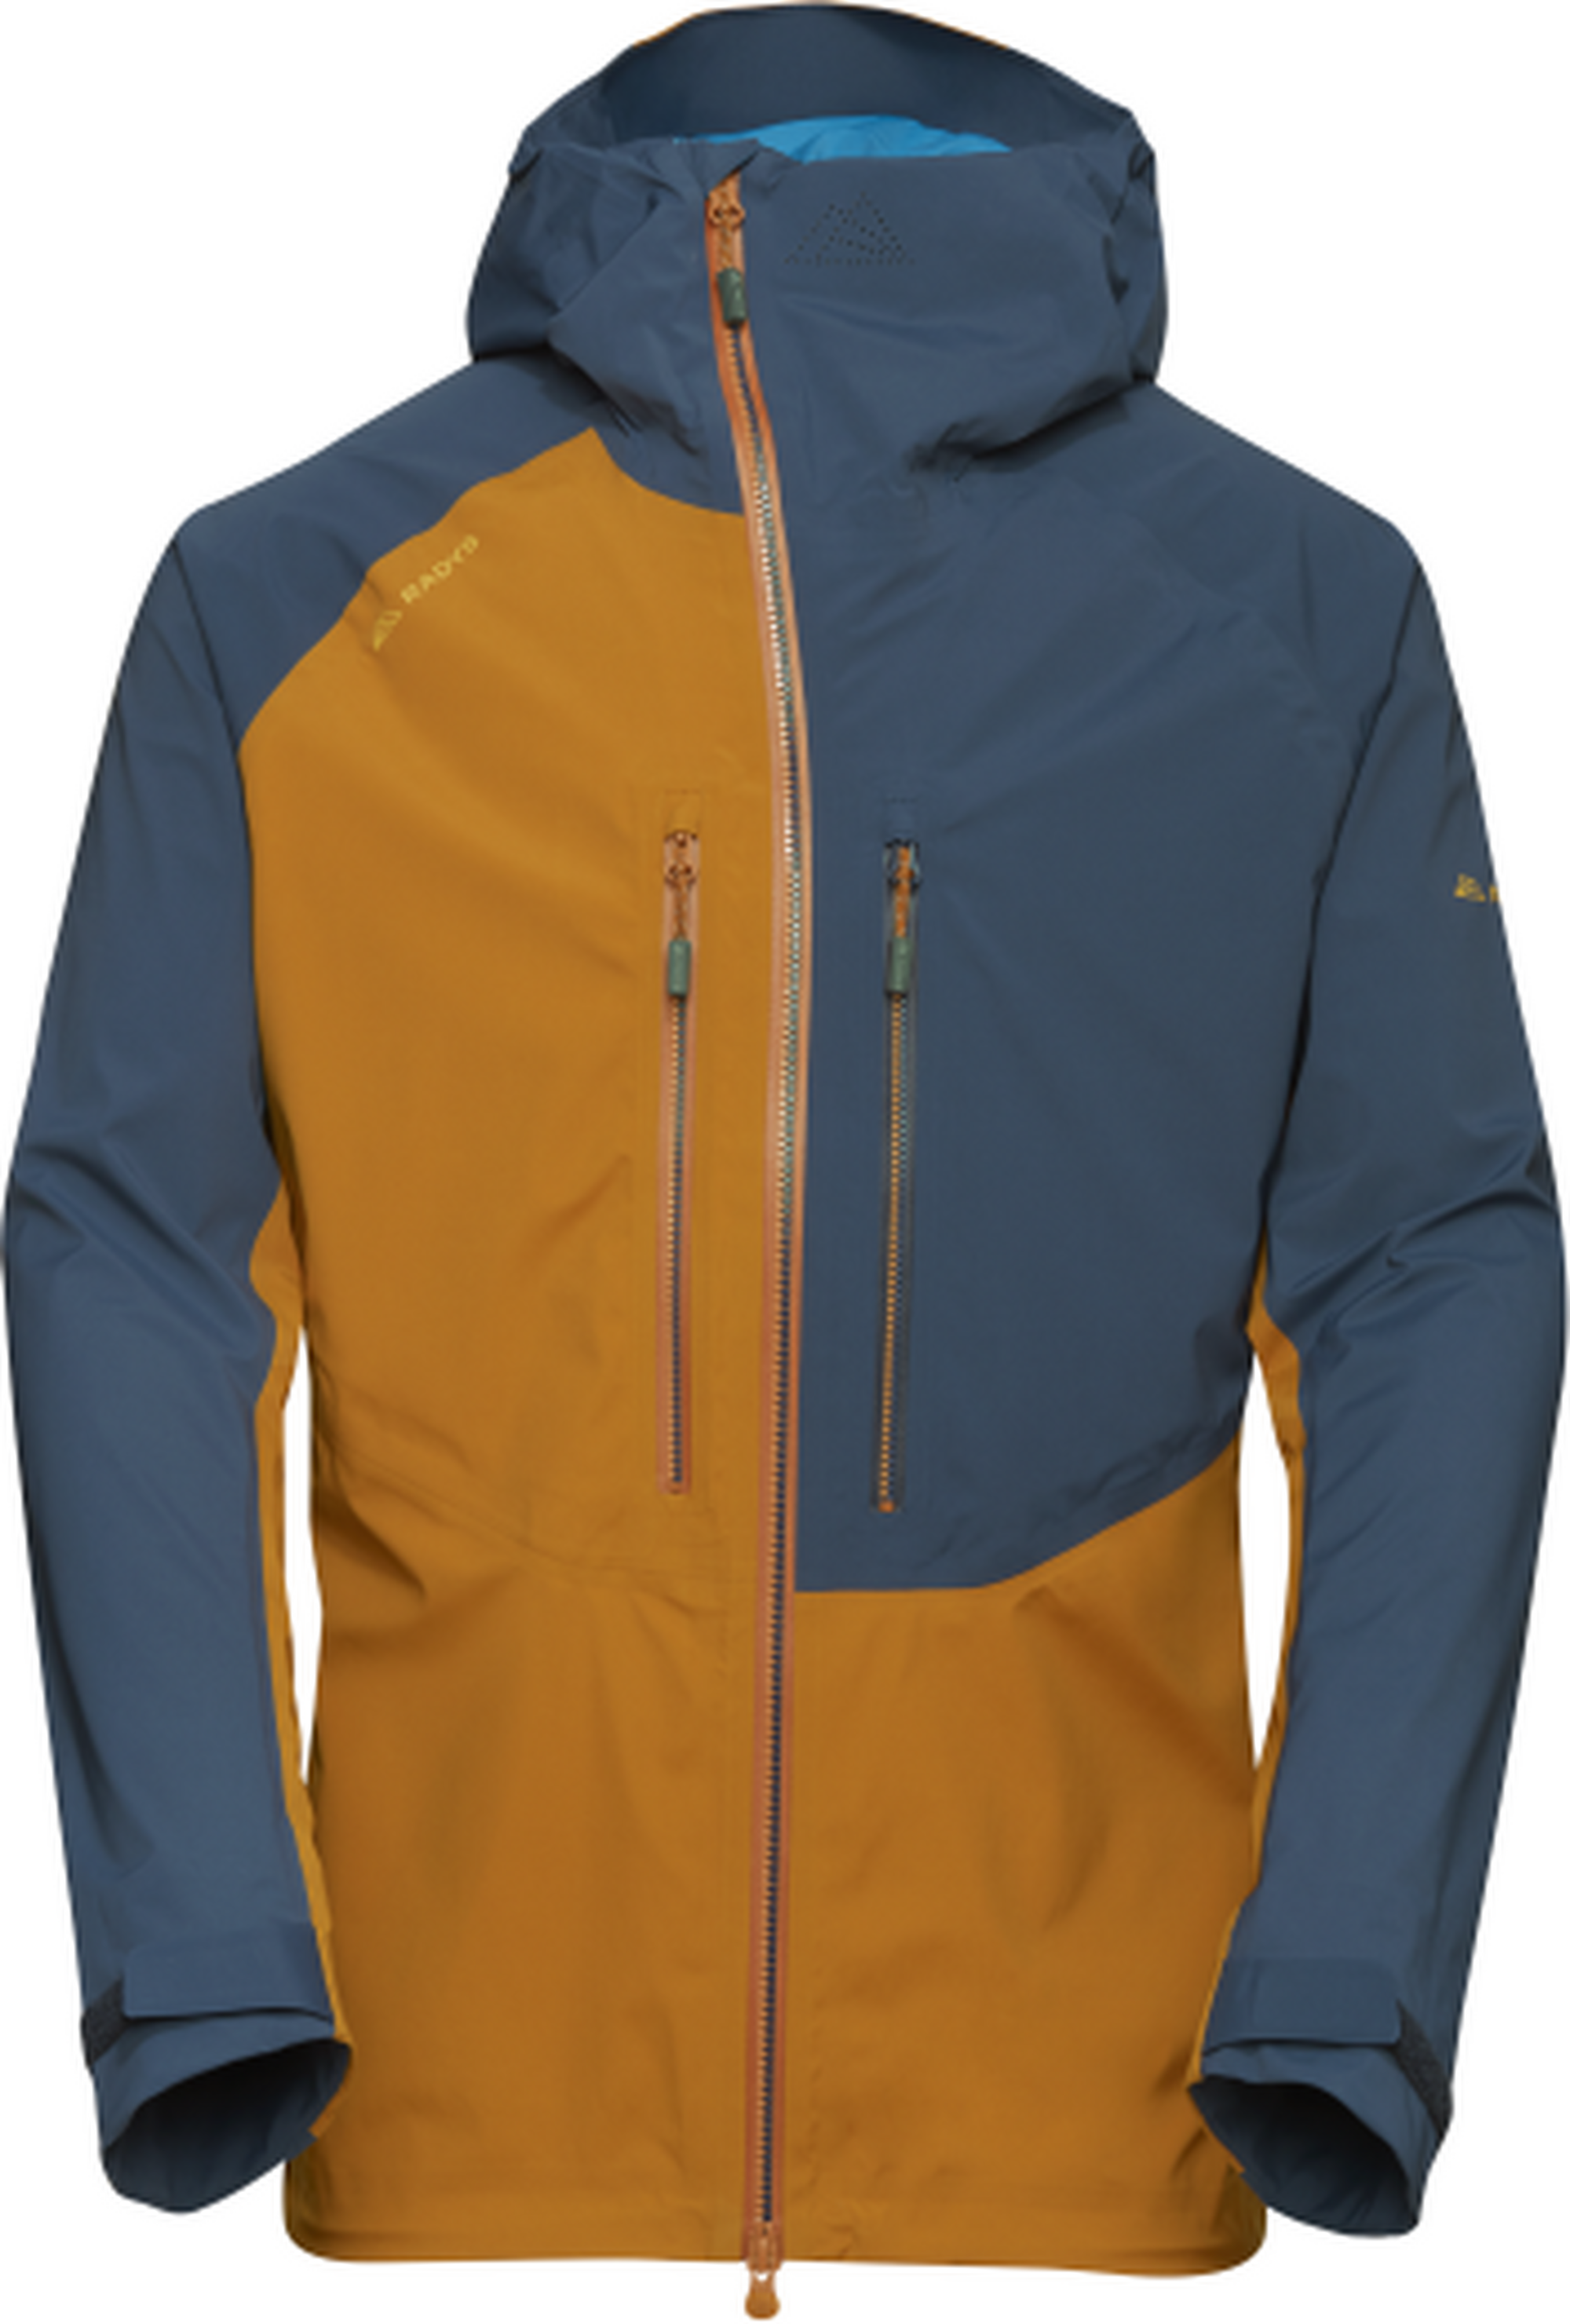 Im Test: Radys R1 Alpine Tech Jacket